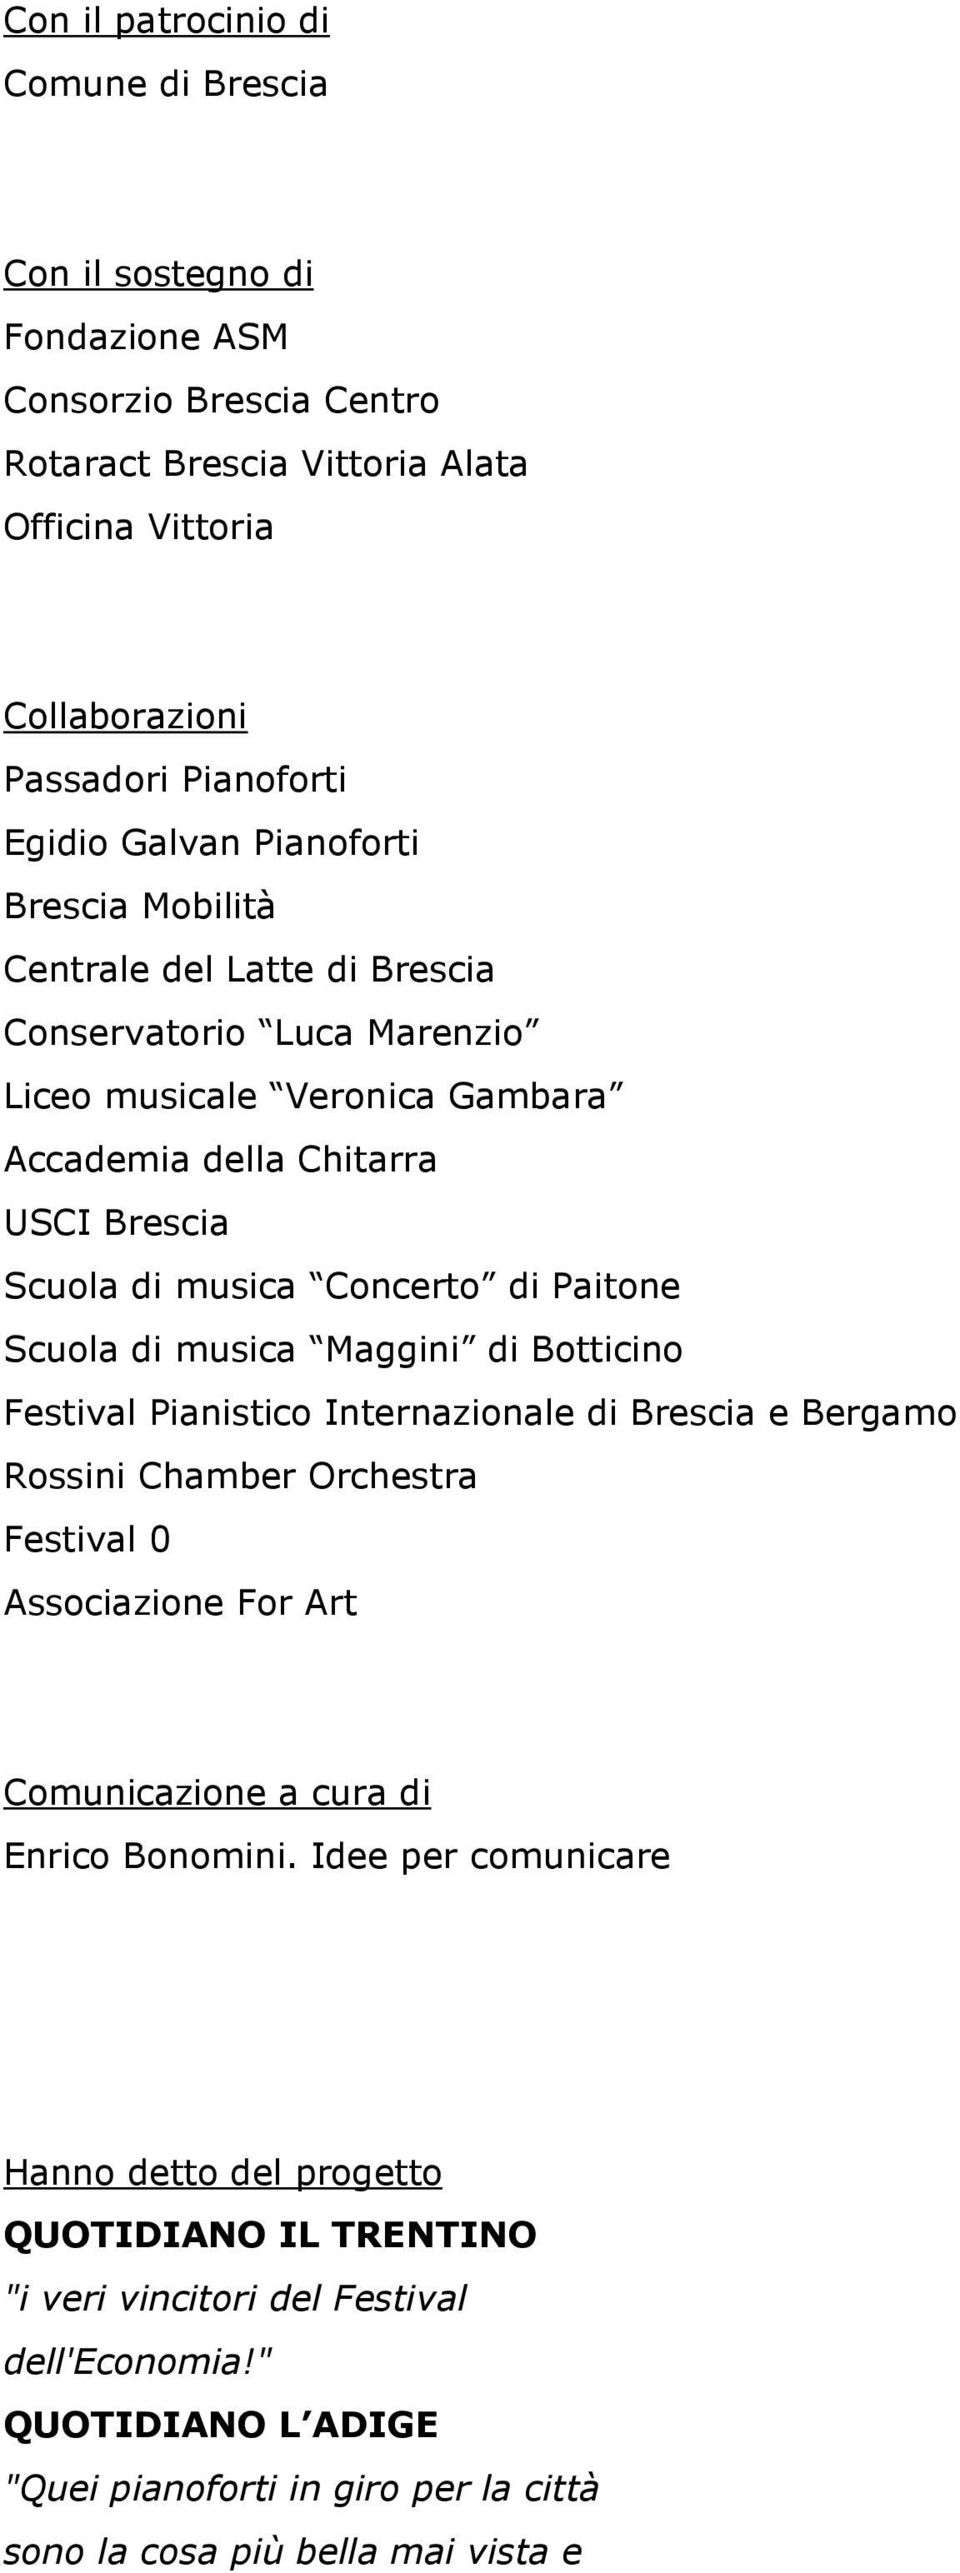 Scuola di musica Maggini di Botticino Festival Pianistico Internazionale di Brescia e Bergamo Rossini Chamber Orchestra Festival 0 Associazione For Art Comunicazione a cura di Enrico Bonomini.